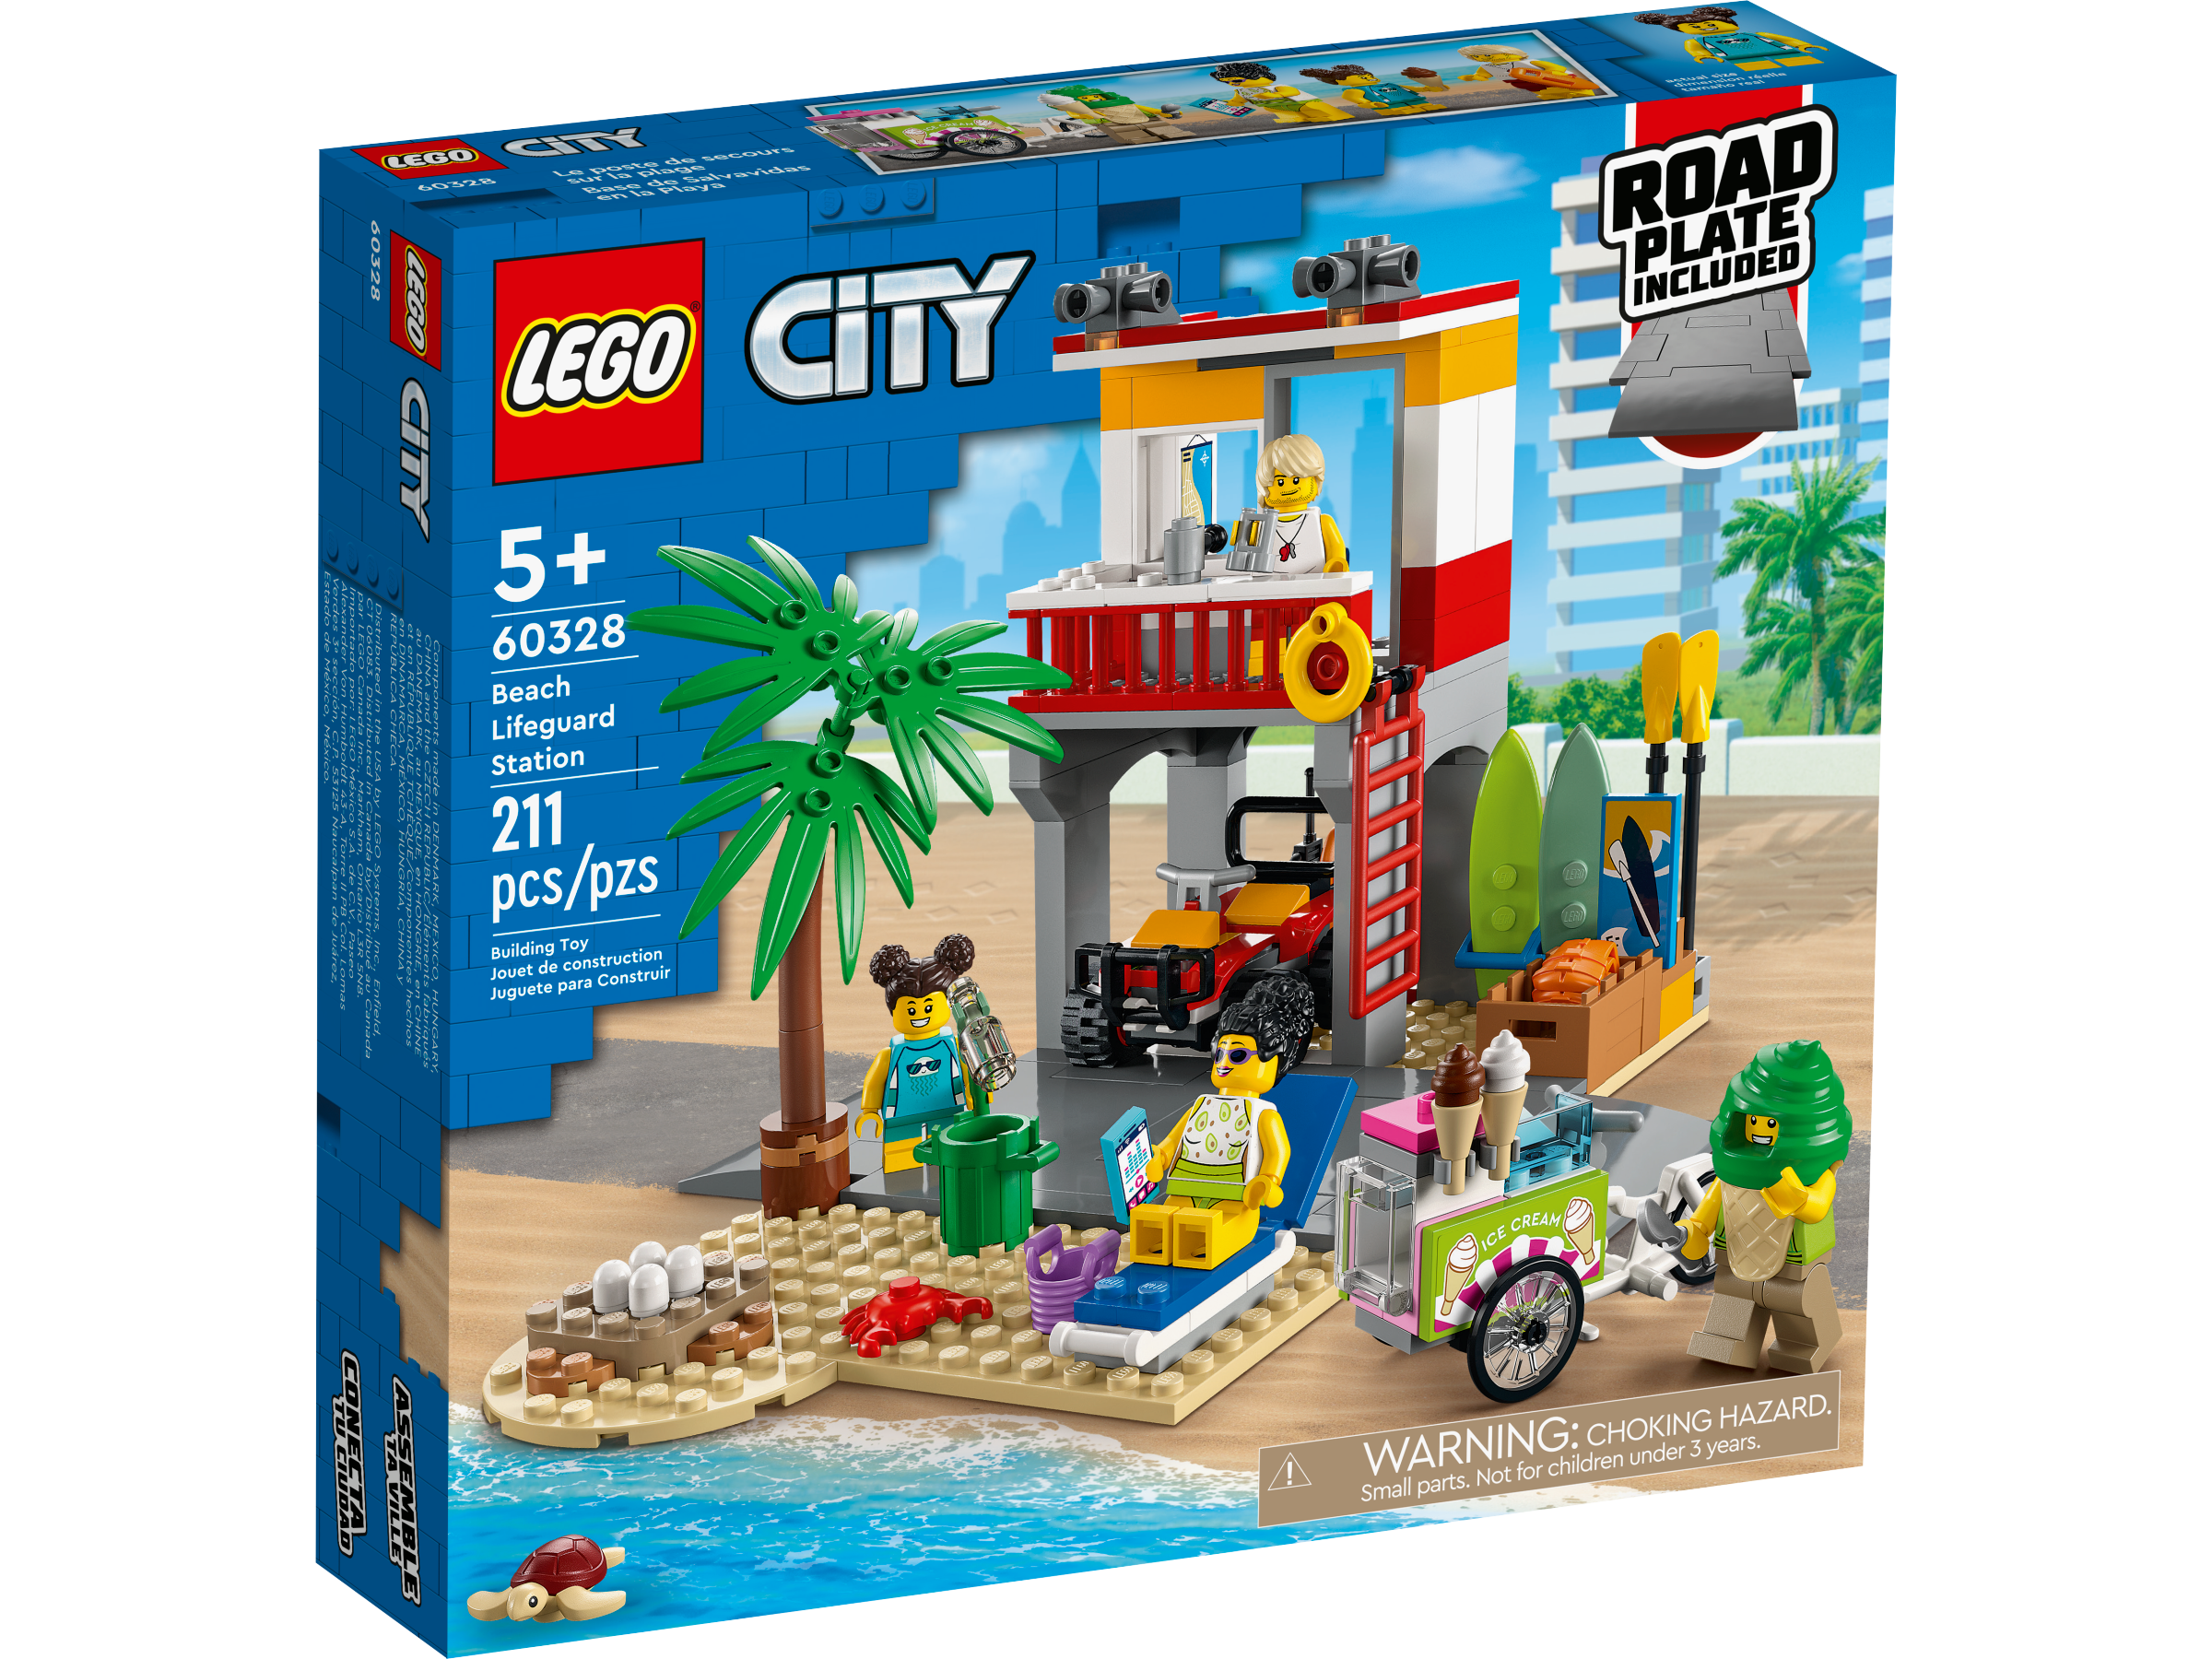 Juguetes de LEGO® | Oficial LEGO® Shop MX